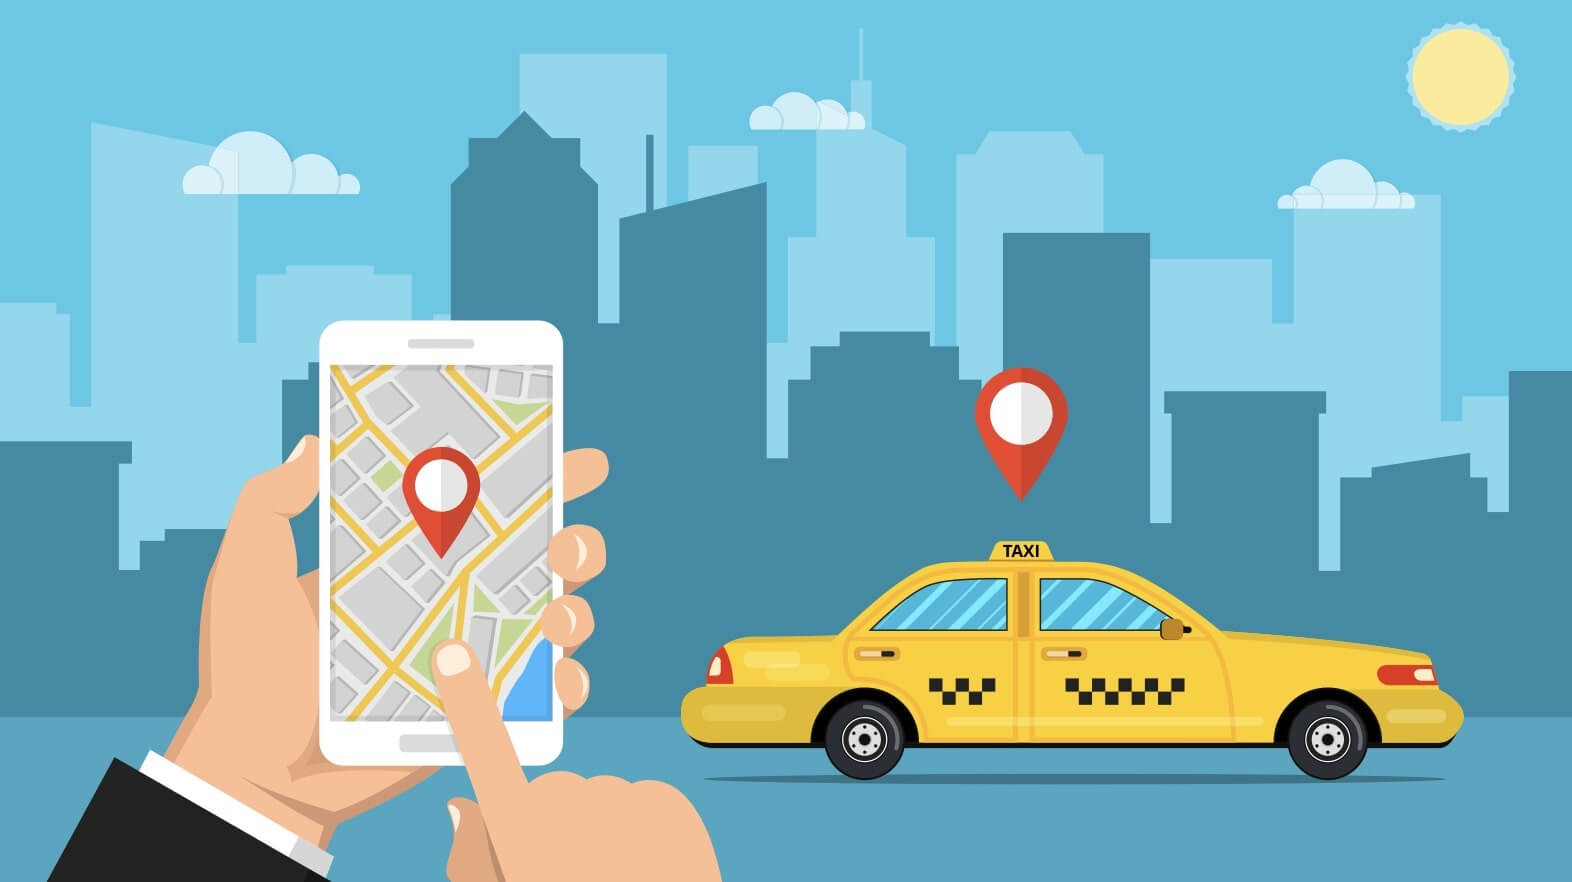 名古屋で使えるタクシーアプリとクーポン情報